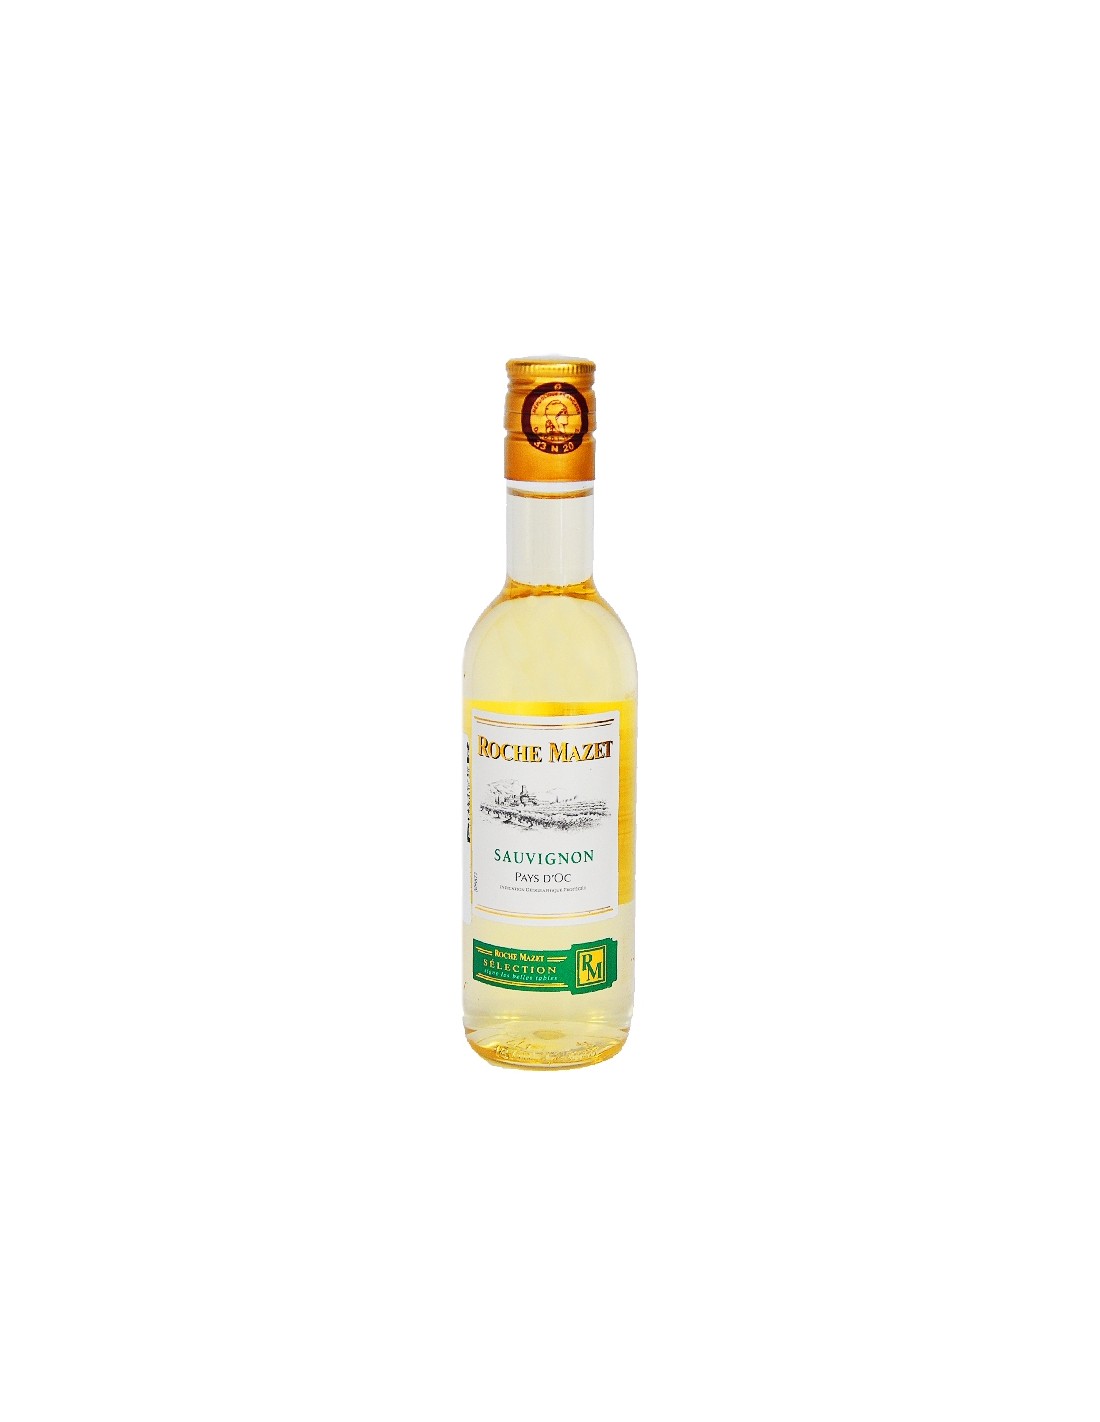 Vin alb, Sauvignon Blanc, Roche Mazet Pays d’Oc, 0.187L, 12% alc., Franta alcooldiscount.ro